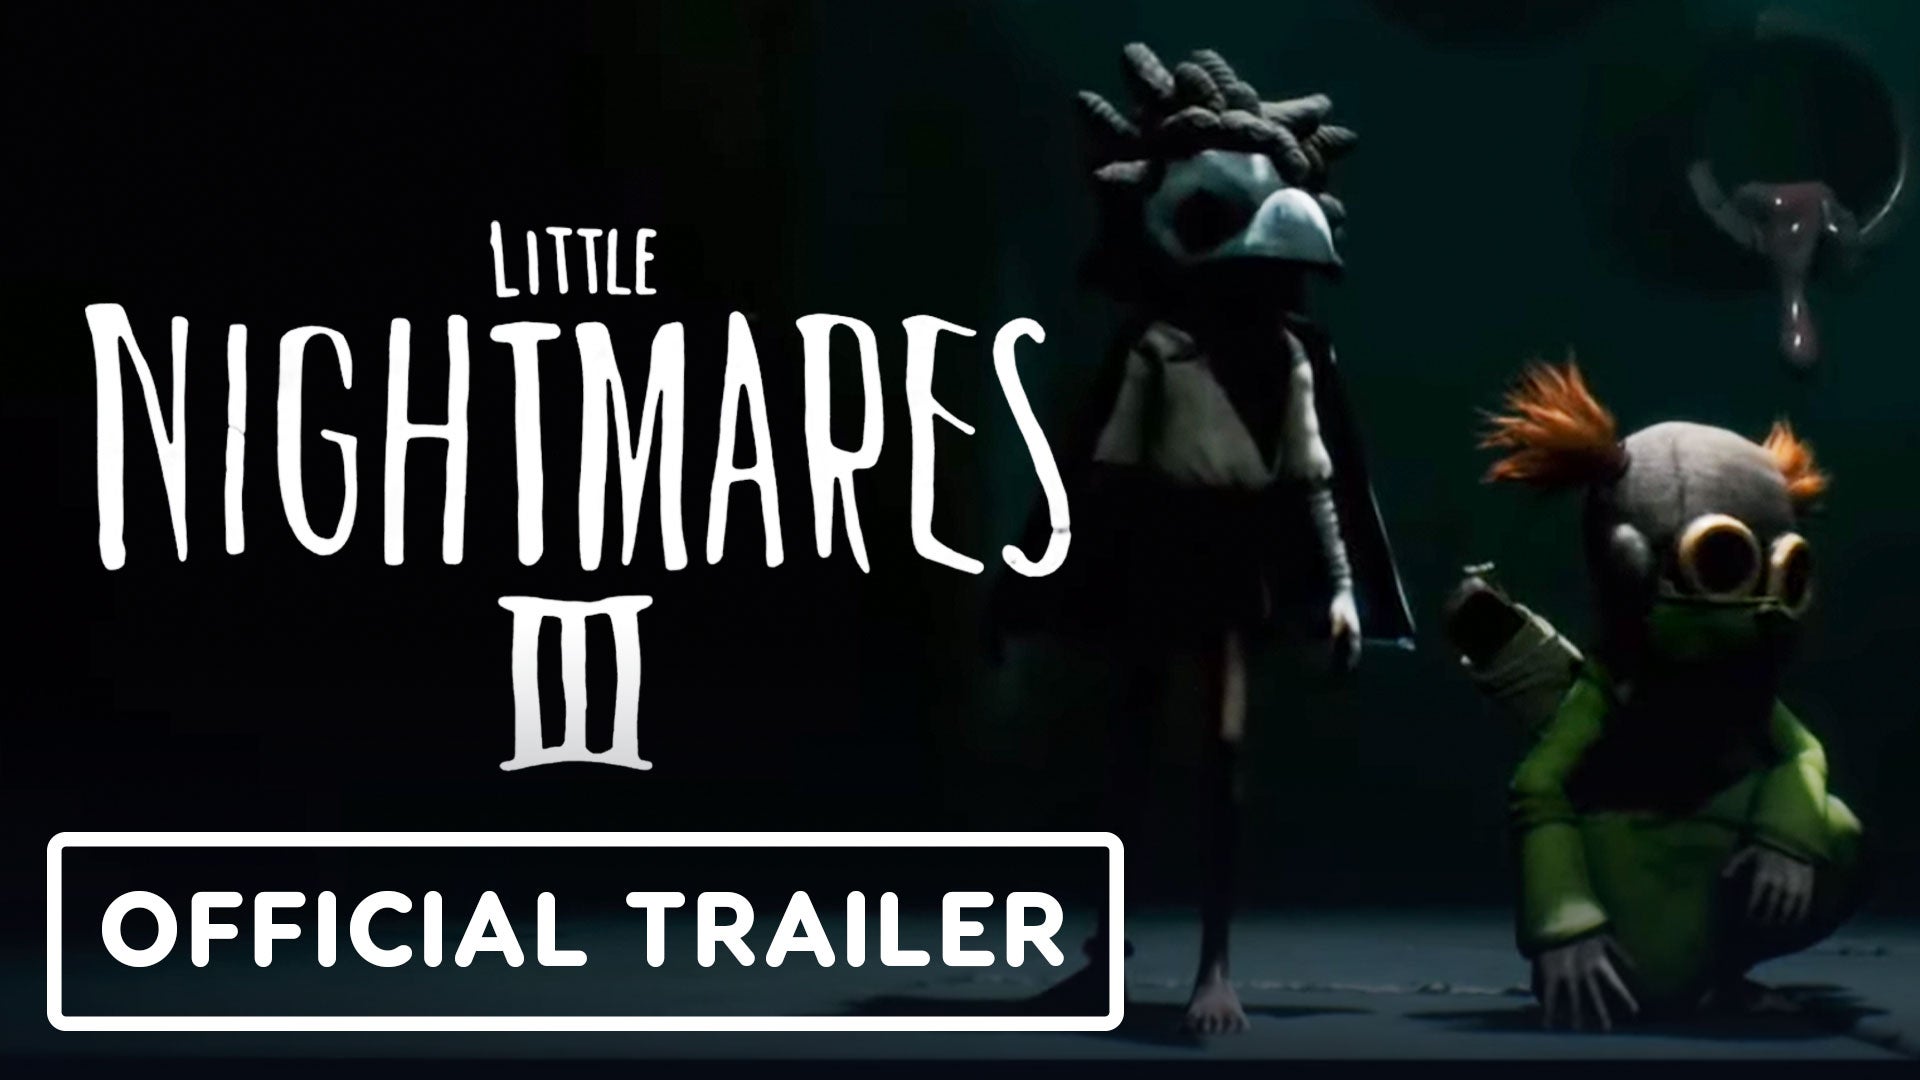 Little Nightmares II - IGN